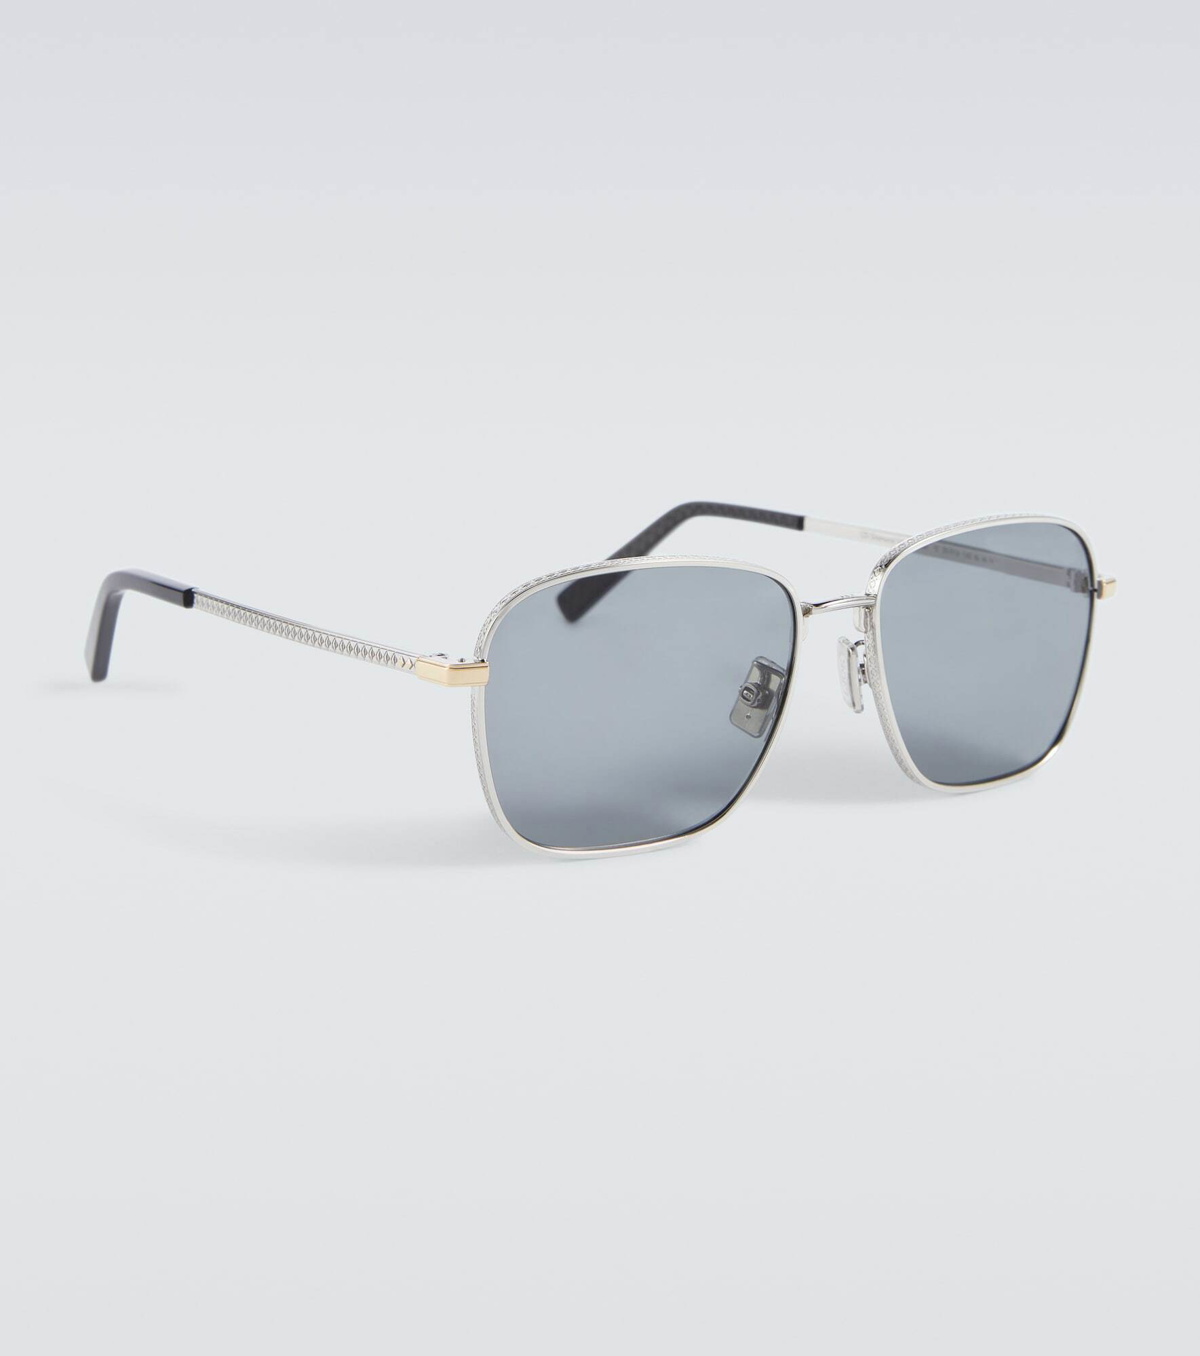 Dior - CD Diamond S4U Gray and Beige Mirrored Square Sunglasses - Men